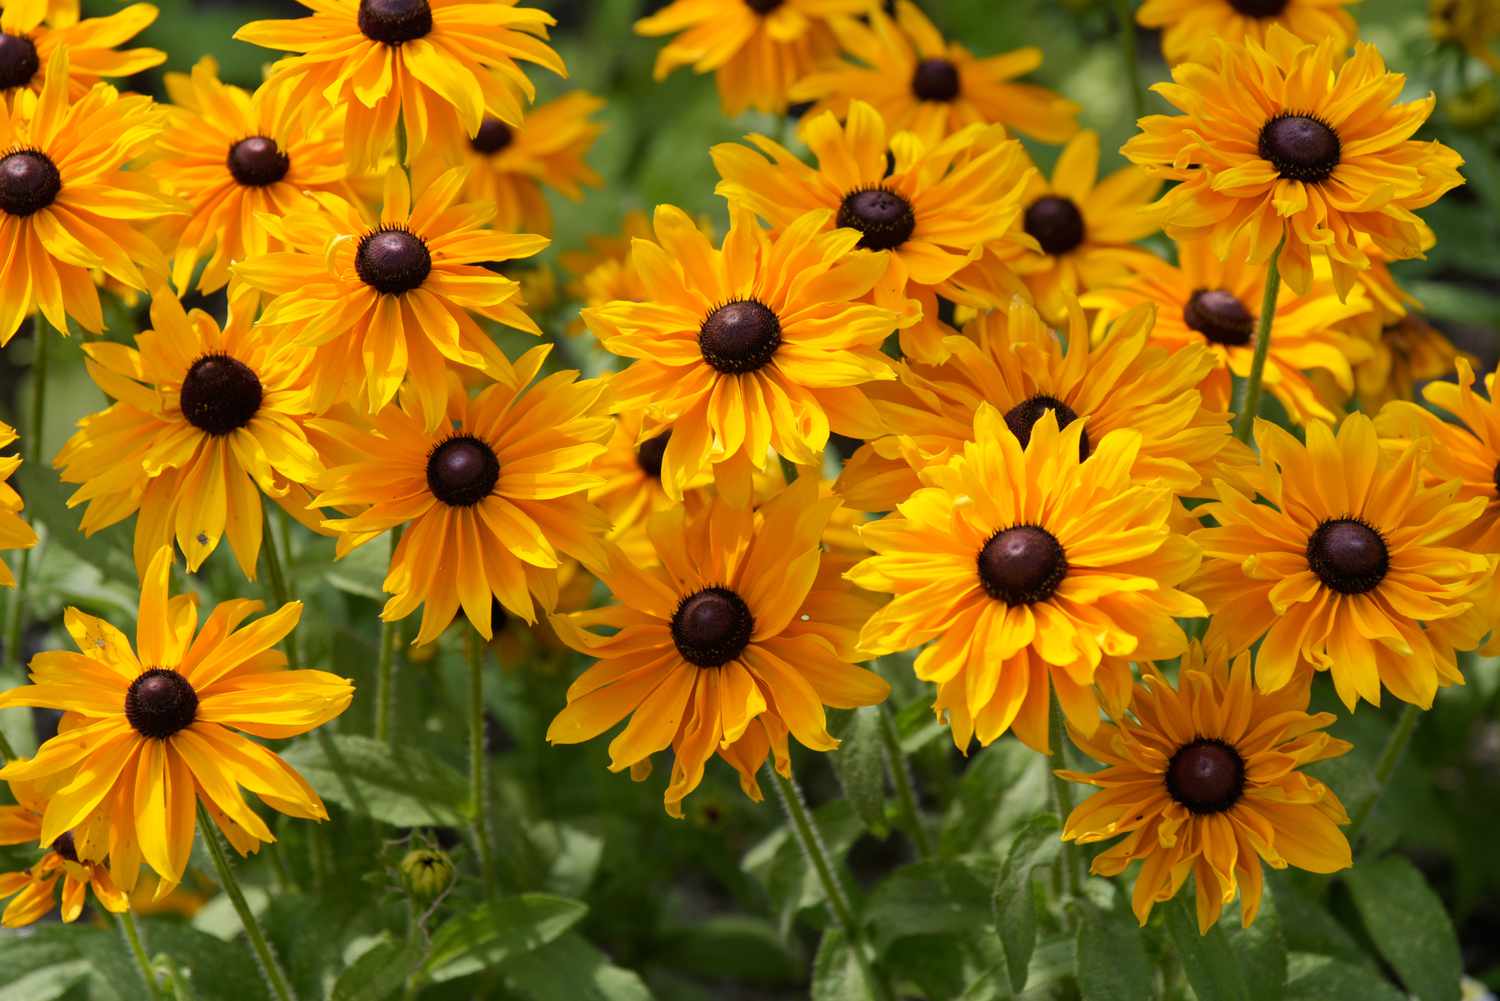 Schwarzäugige Susan-Blüten mit strahlend gelben Blütenblättern um braune Zentren